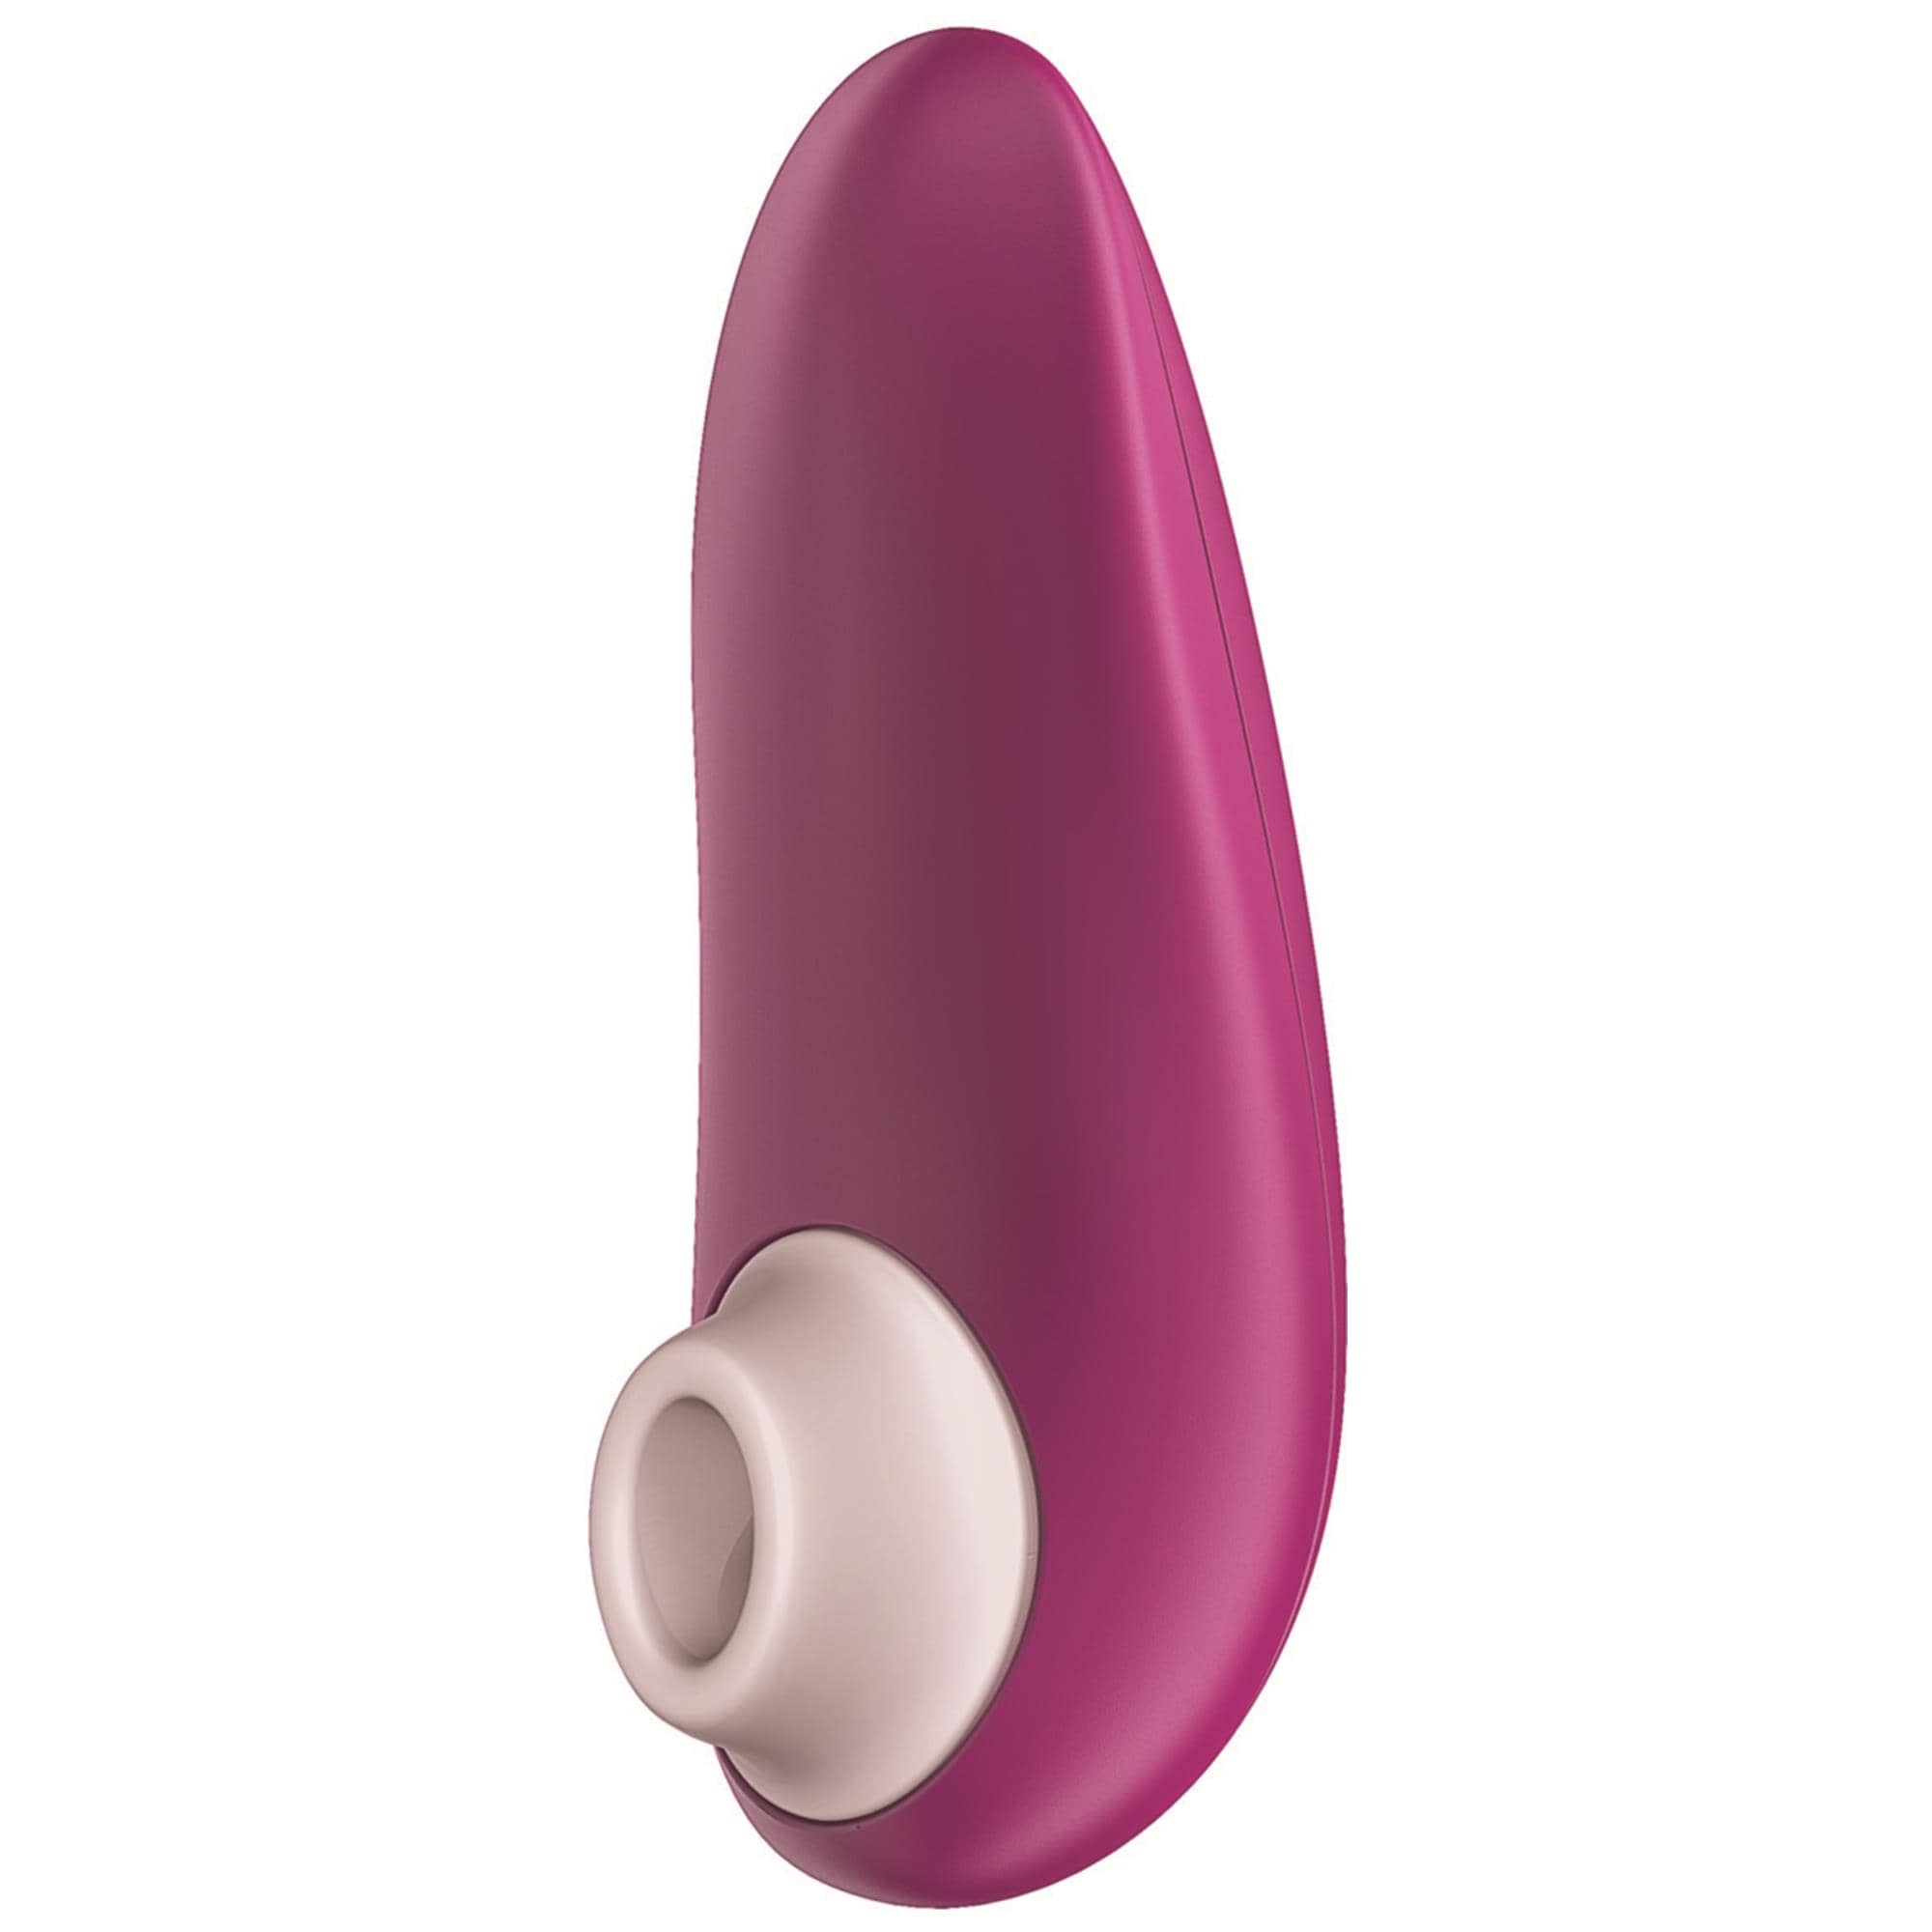 Womanizer Starlet 3 Pink | Lufttrycksvibrator | Intimast